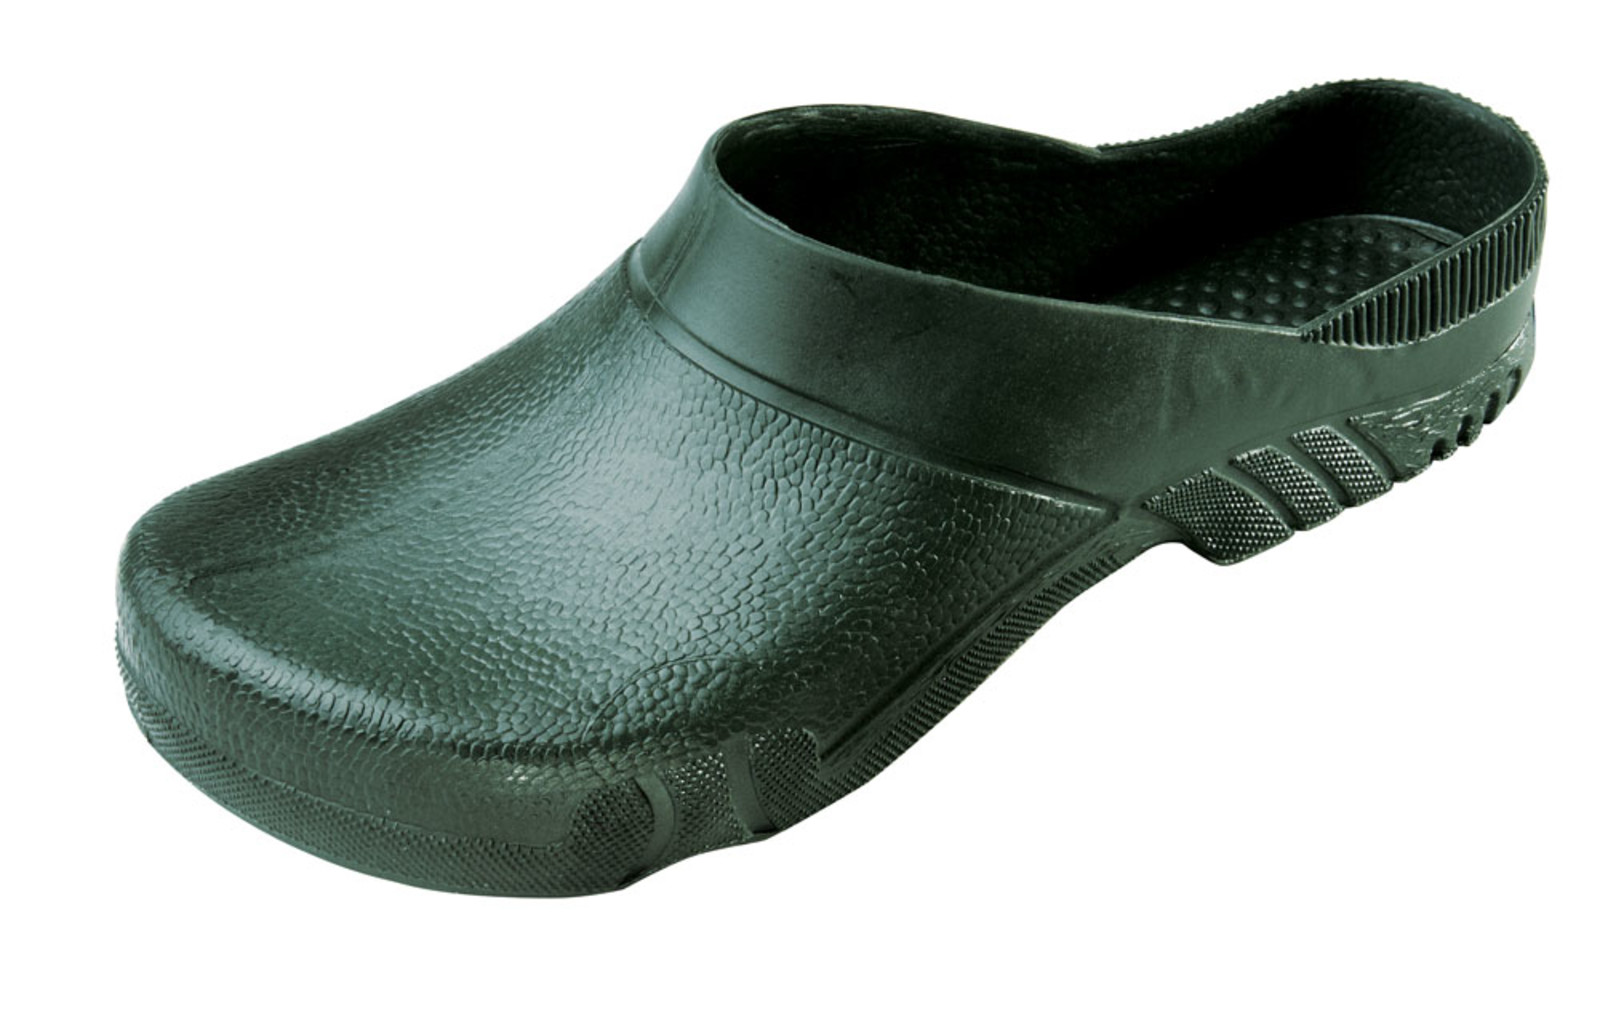 Galoše Boots Birba  - veľkosť: 43-44, farba: olivová zelená